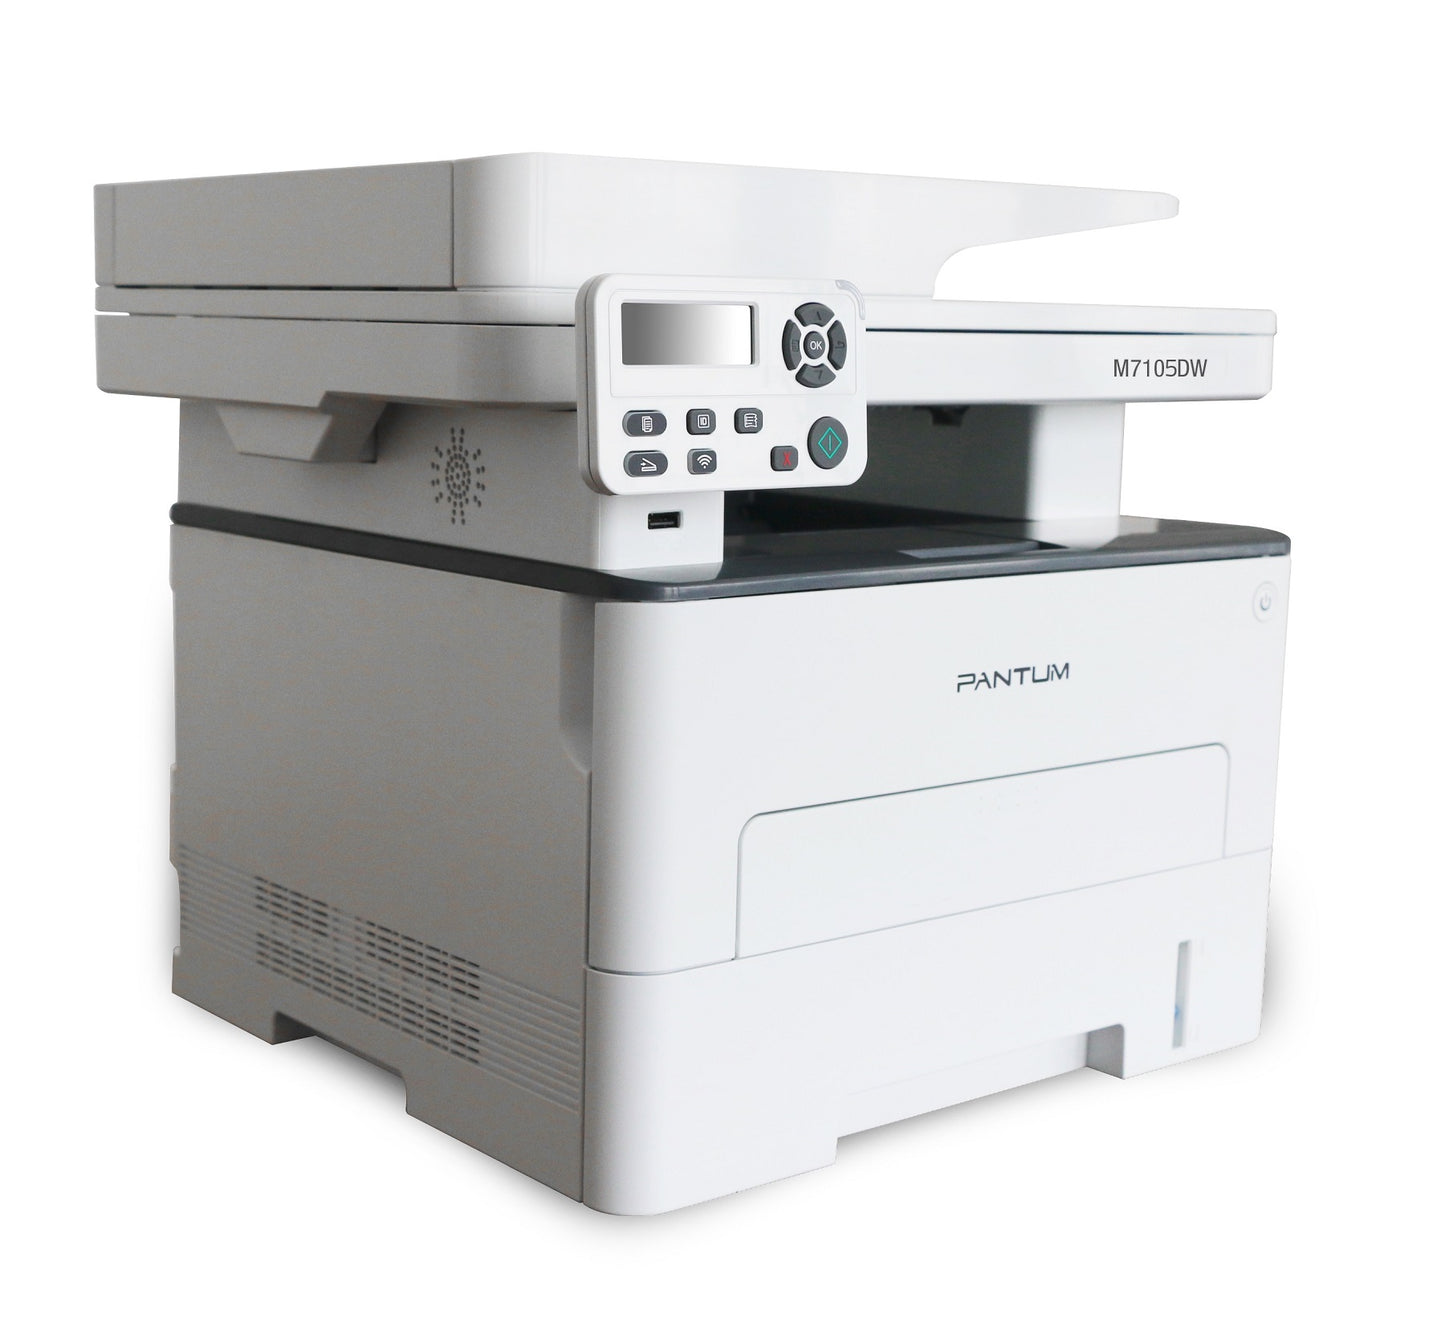 Pantum M7105DW MPS Multifunction Laser Printer Wi-Fi/LAN